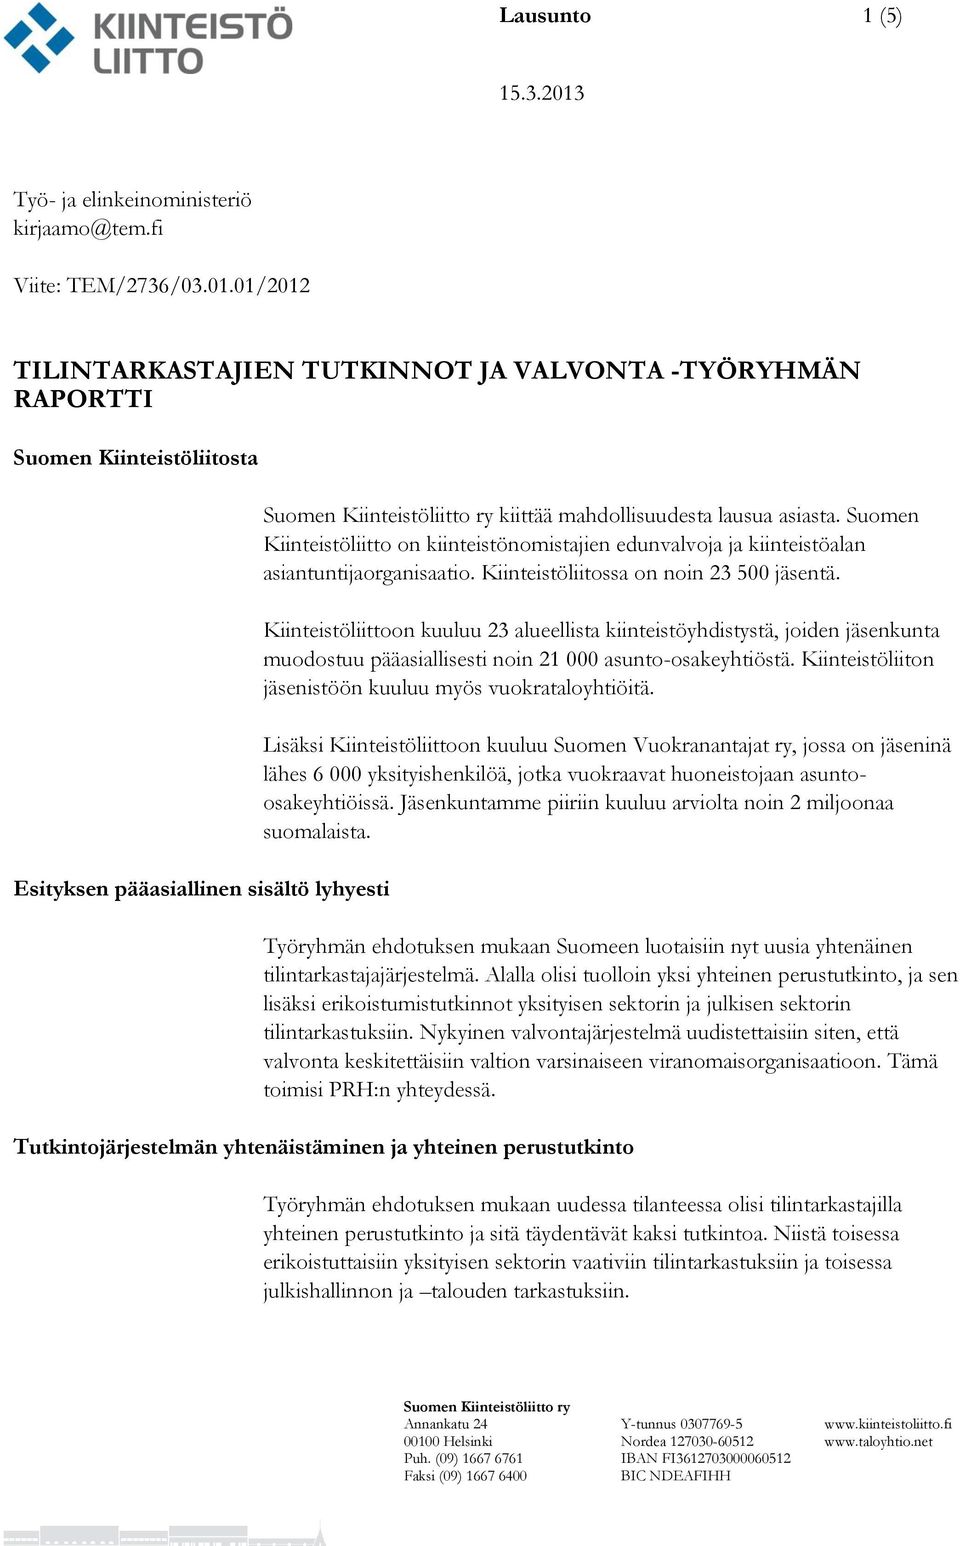 Suomen Kiinteistöliitto on kiinteistönomistajien edunvalvoja ja kiinteistöalan asiantuntijaorganisaatio. Kiinteistöliitossa on noin 23 500 jäsentä.